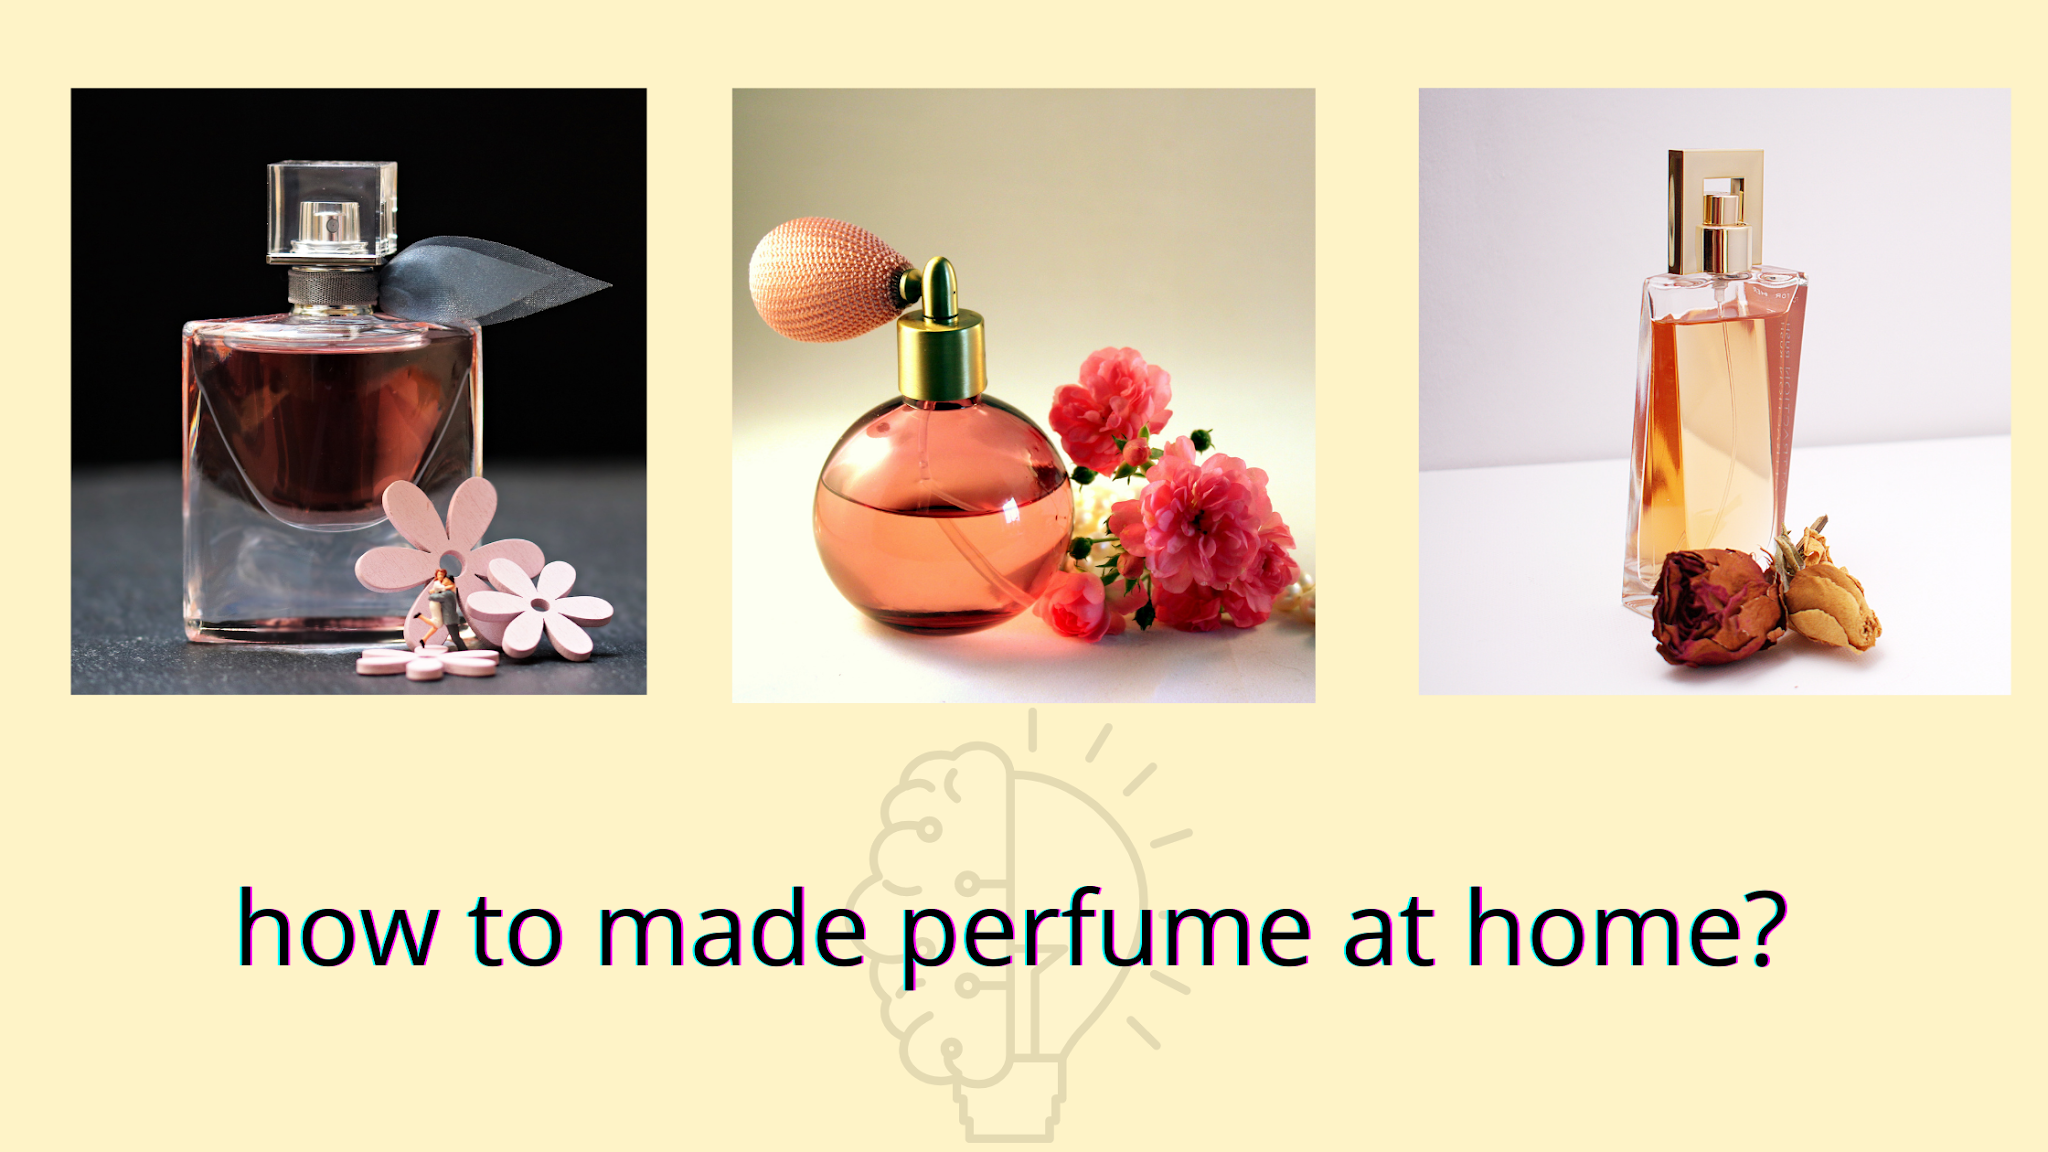 Producing perfume at home.